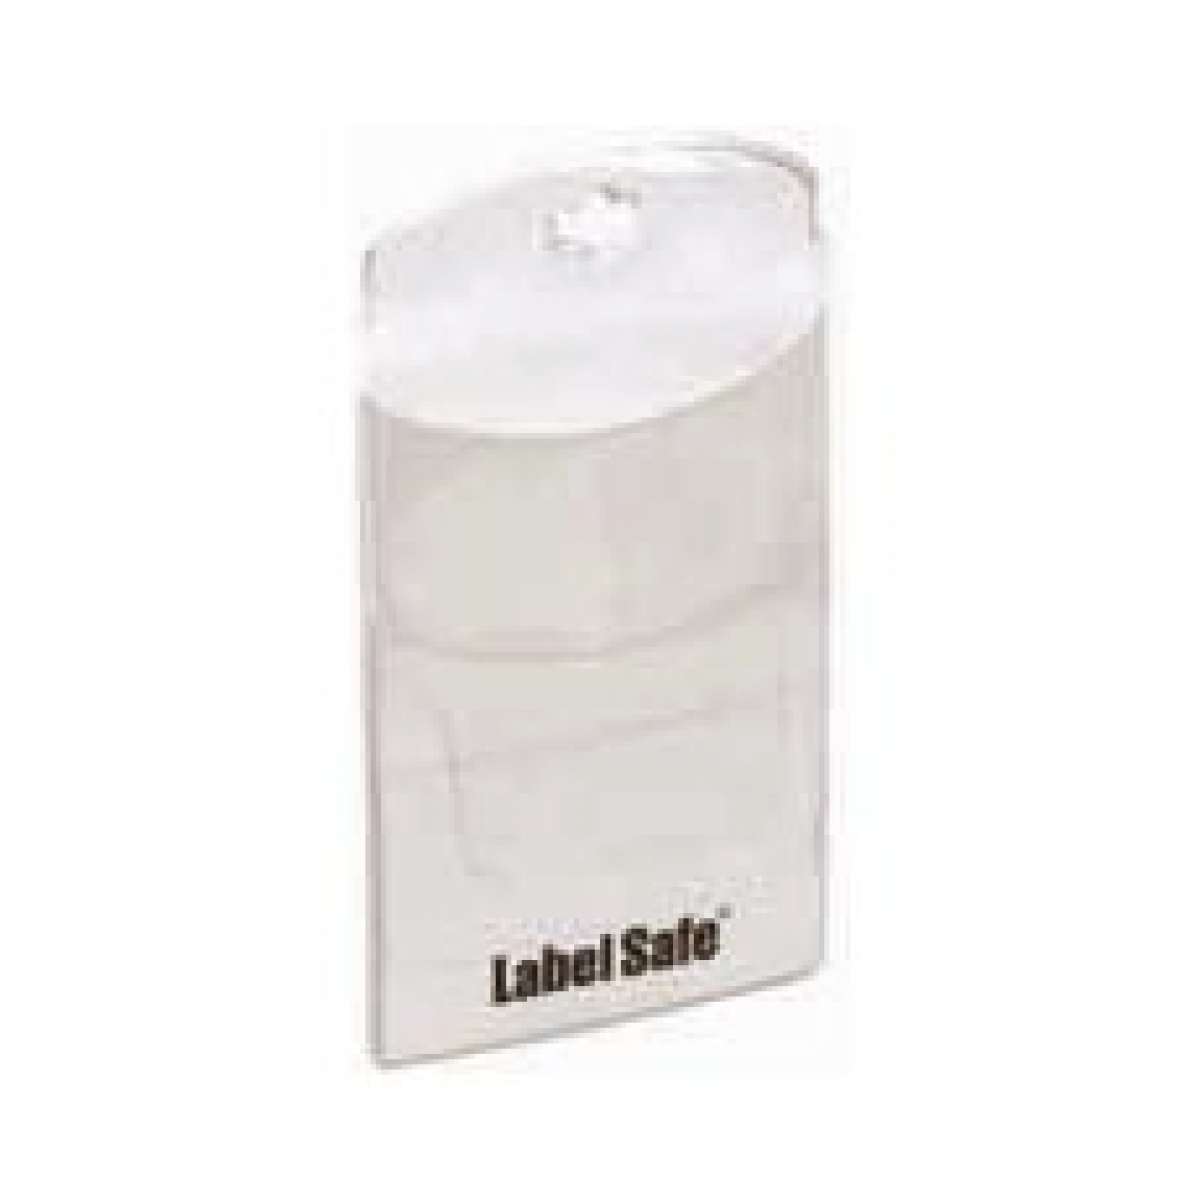 Label Safe Label Pocket (2 X 3.5)